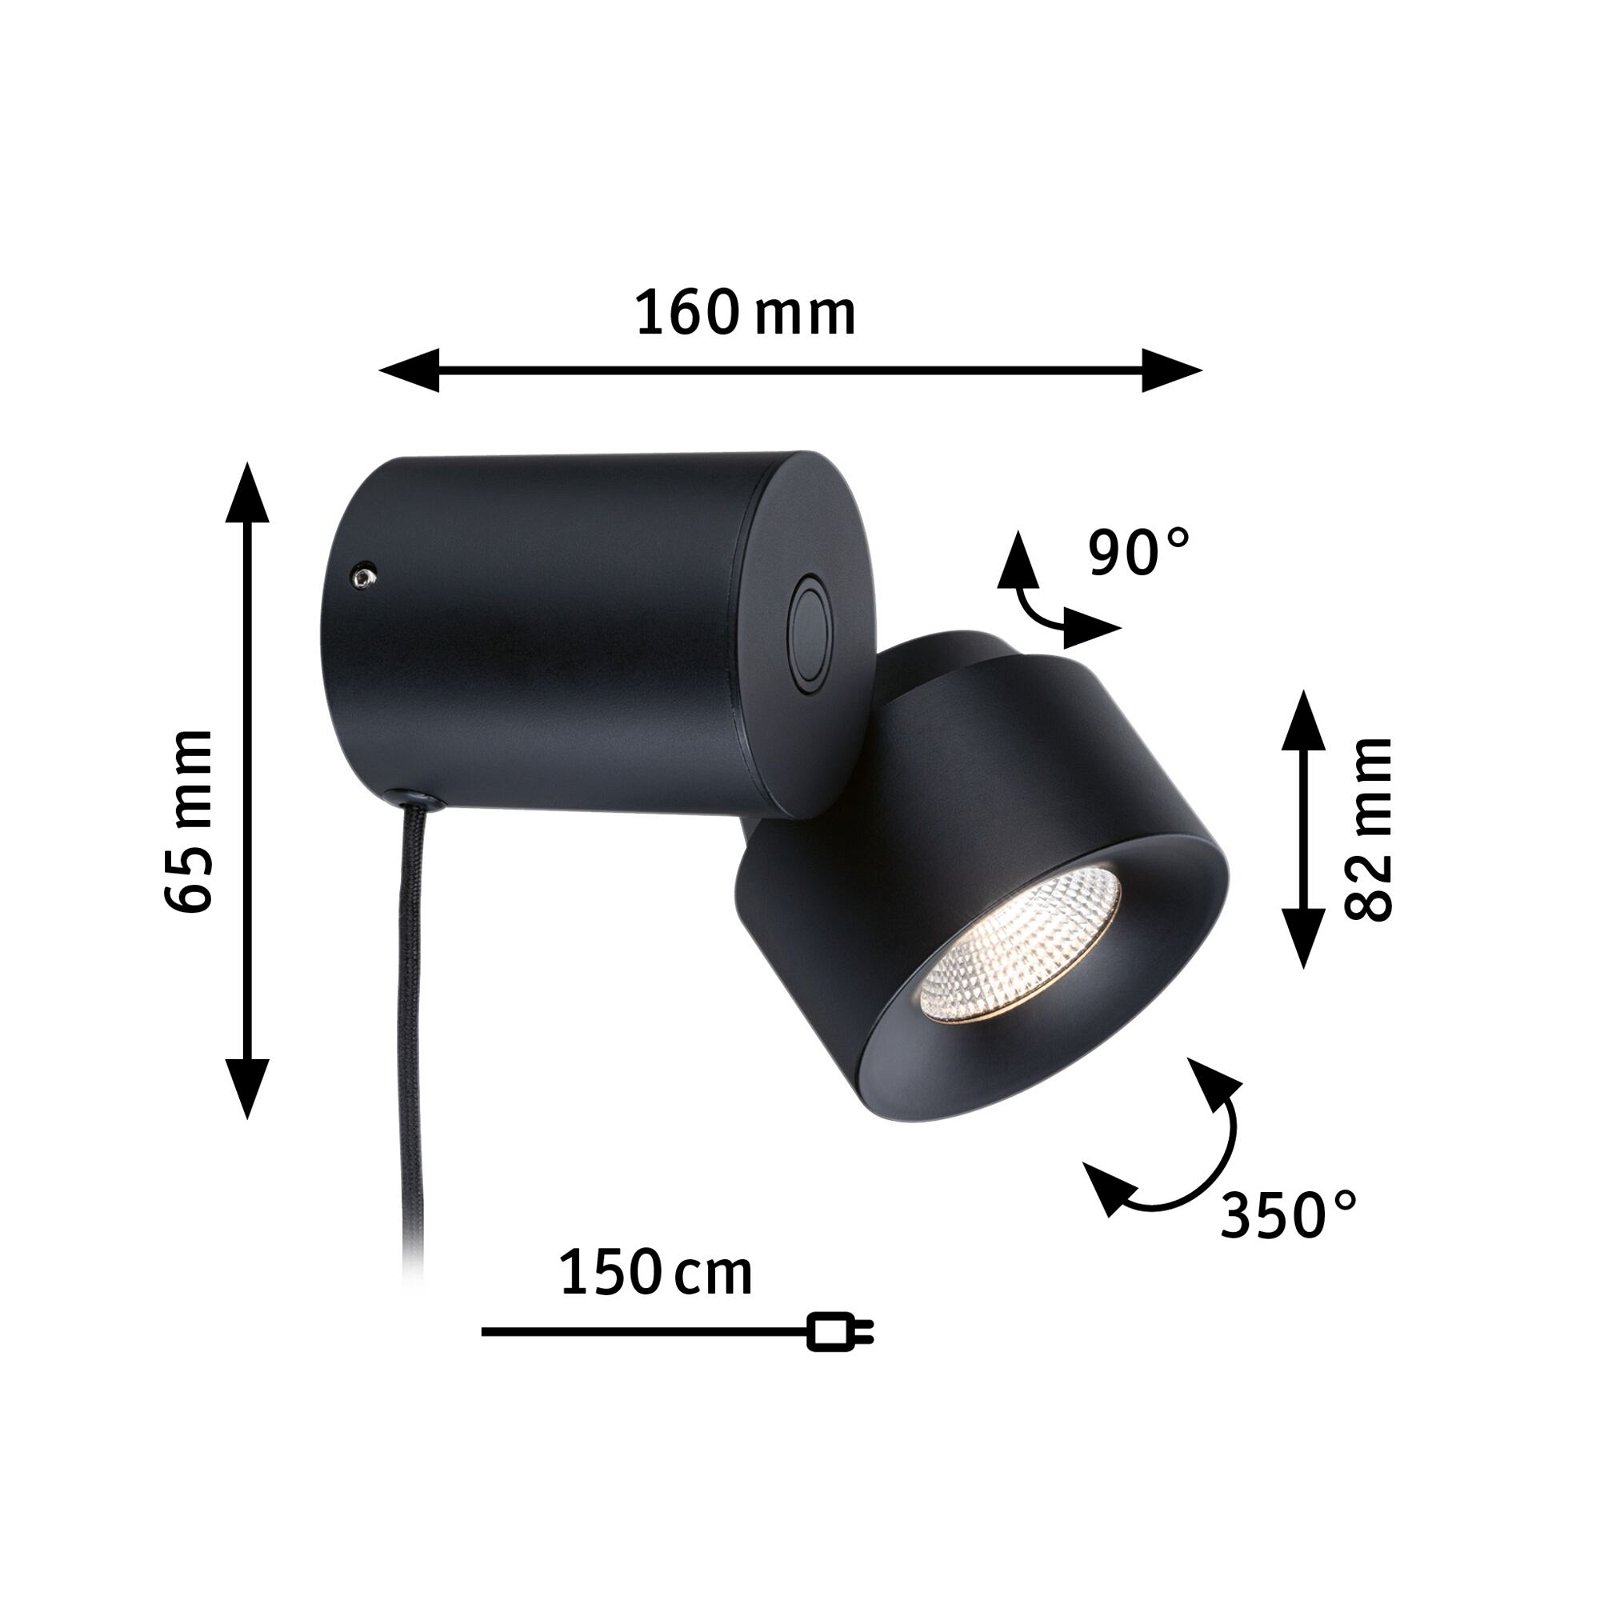 LED-tafellamp 3-Step-Dim Puric Pane 2700K 300lm 3W Zwart